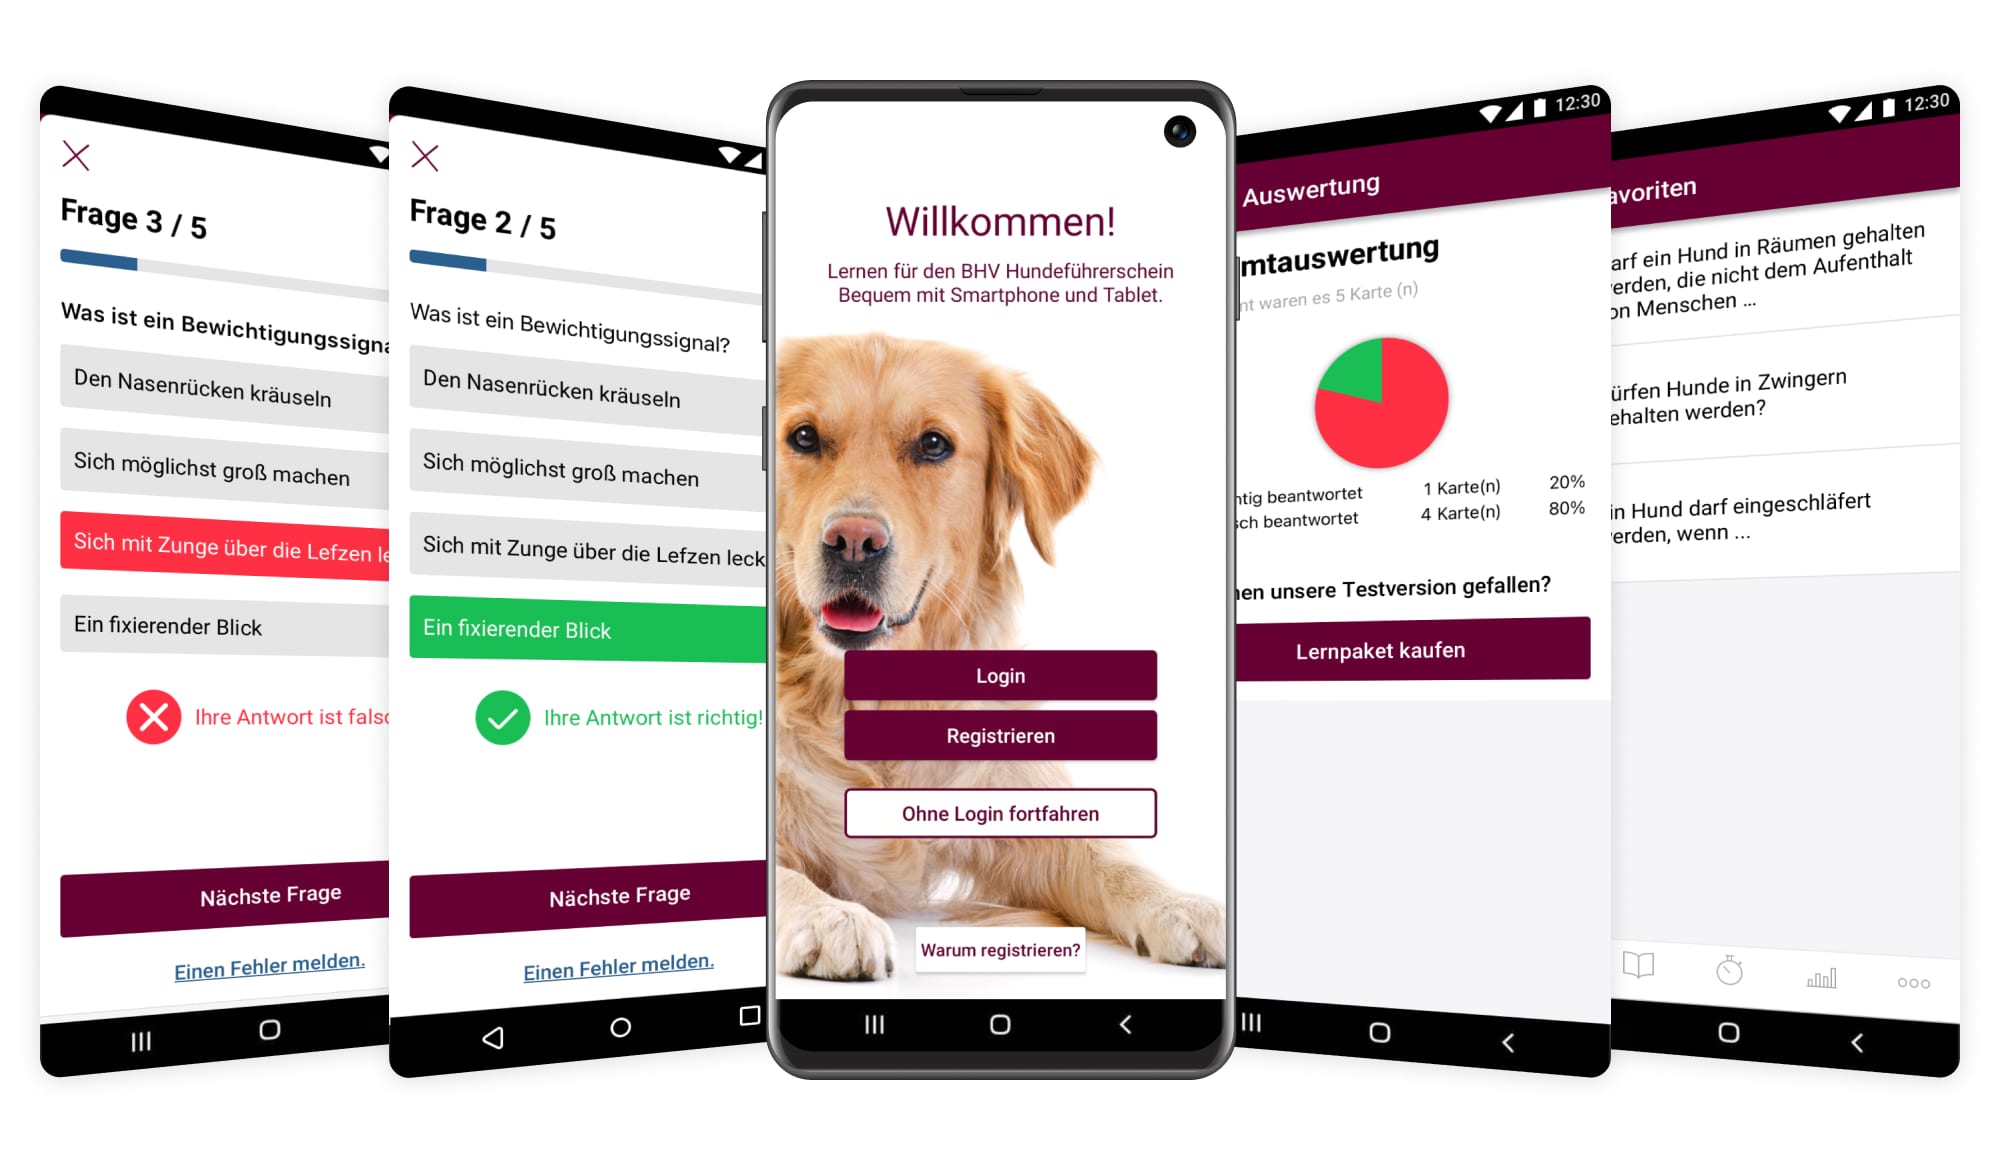 Referenz BHV Hundeführerschein App